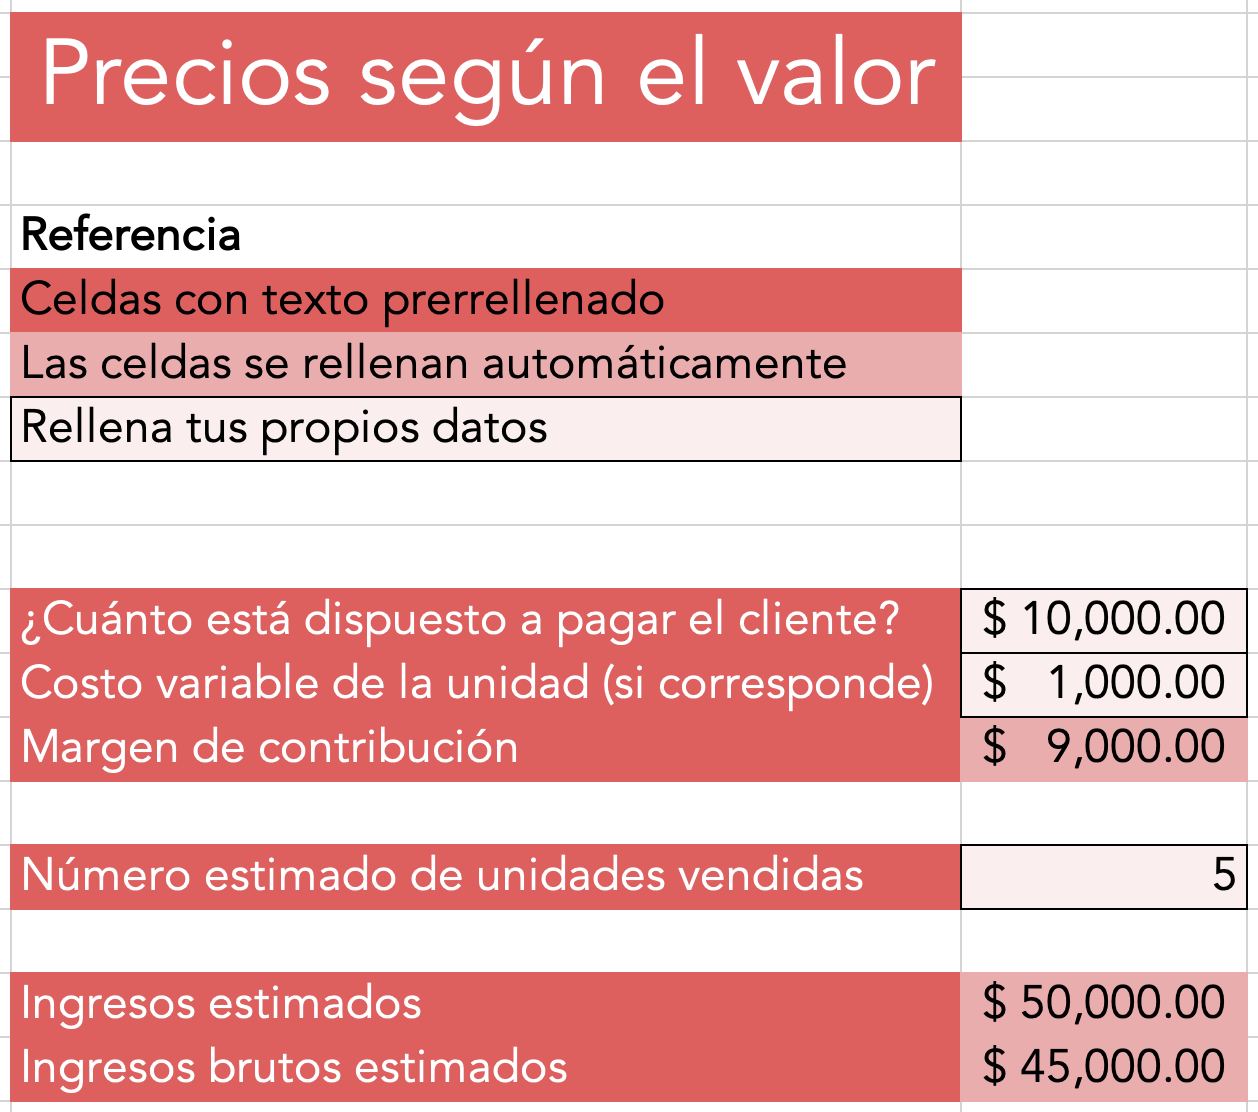 Ejemplo de cálculo de costo de producto (servicio financiero) según el valor